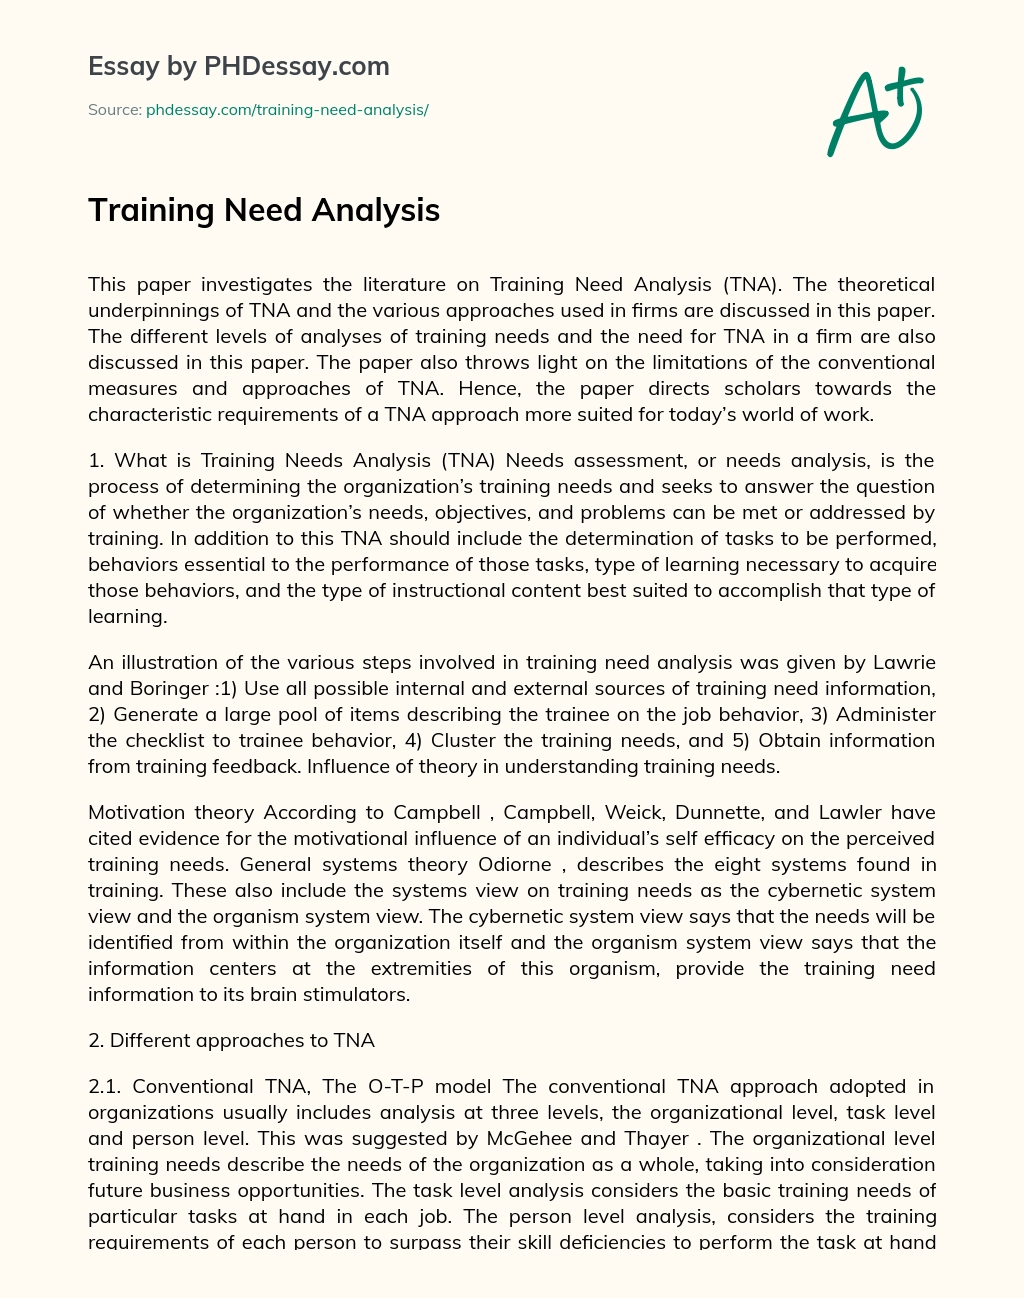 Training Need Analysis essay